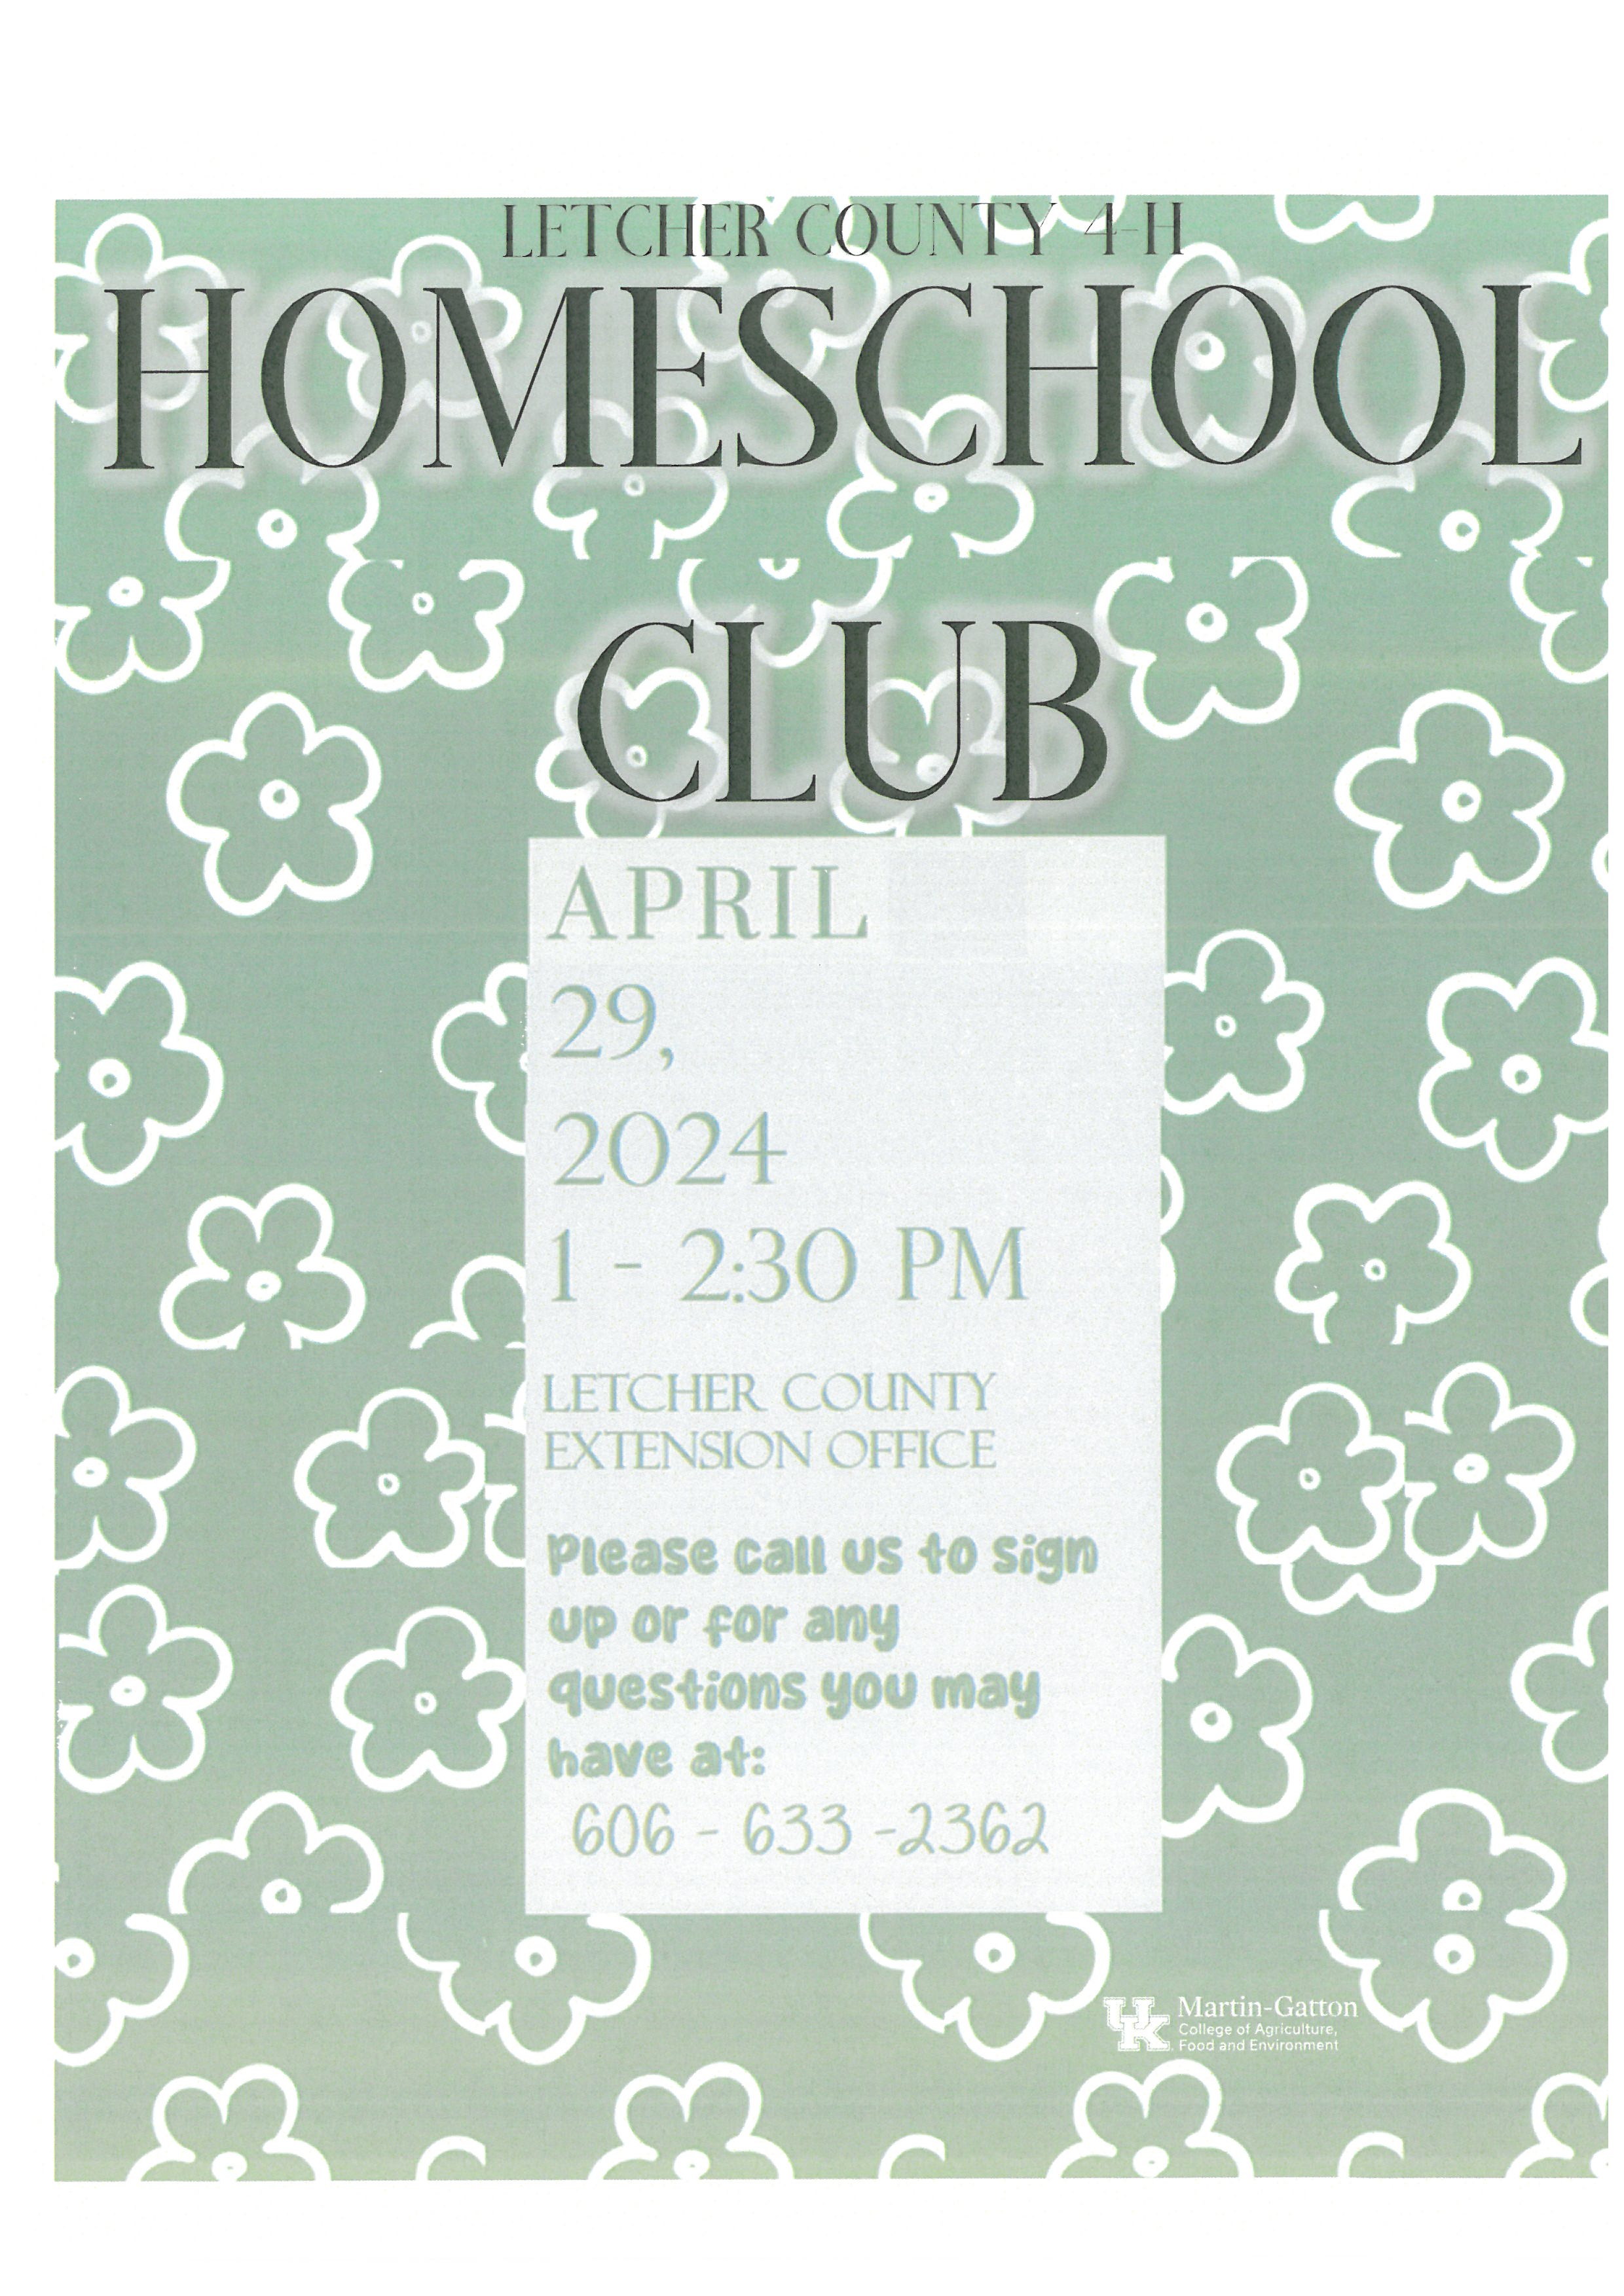 Homeschool Club